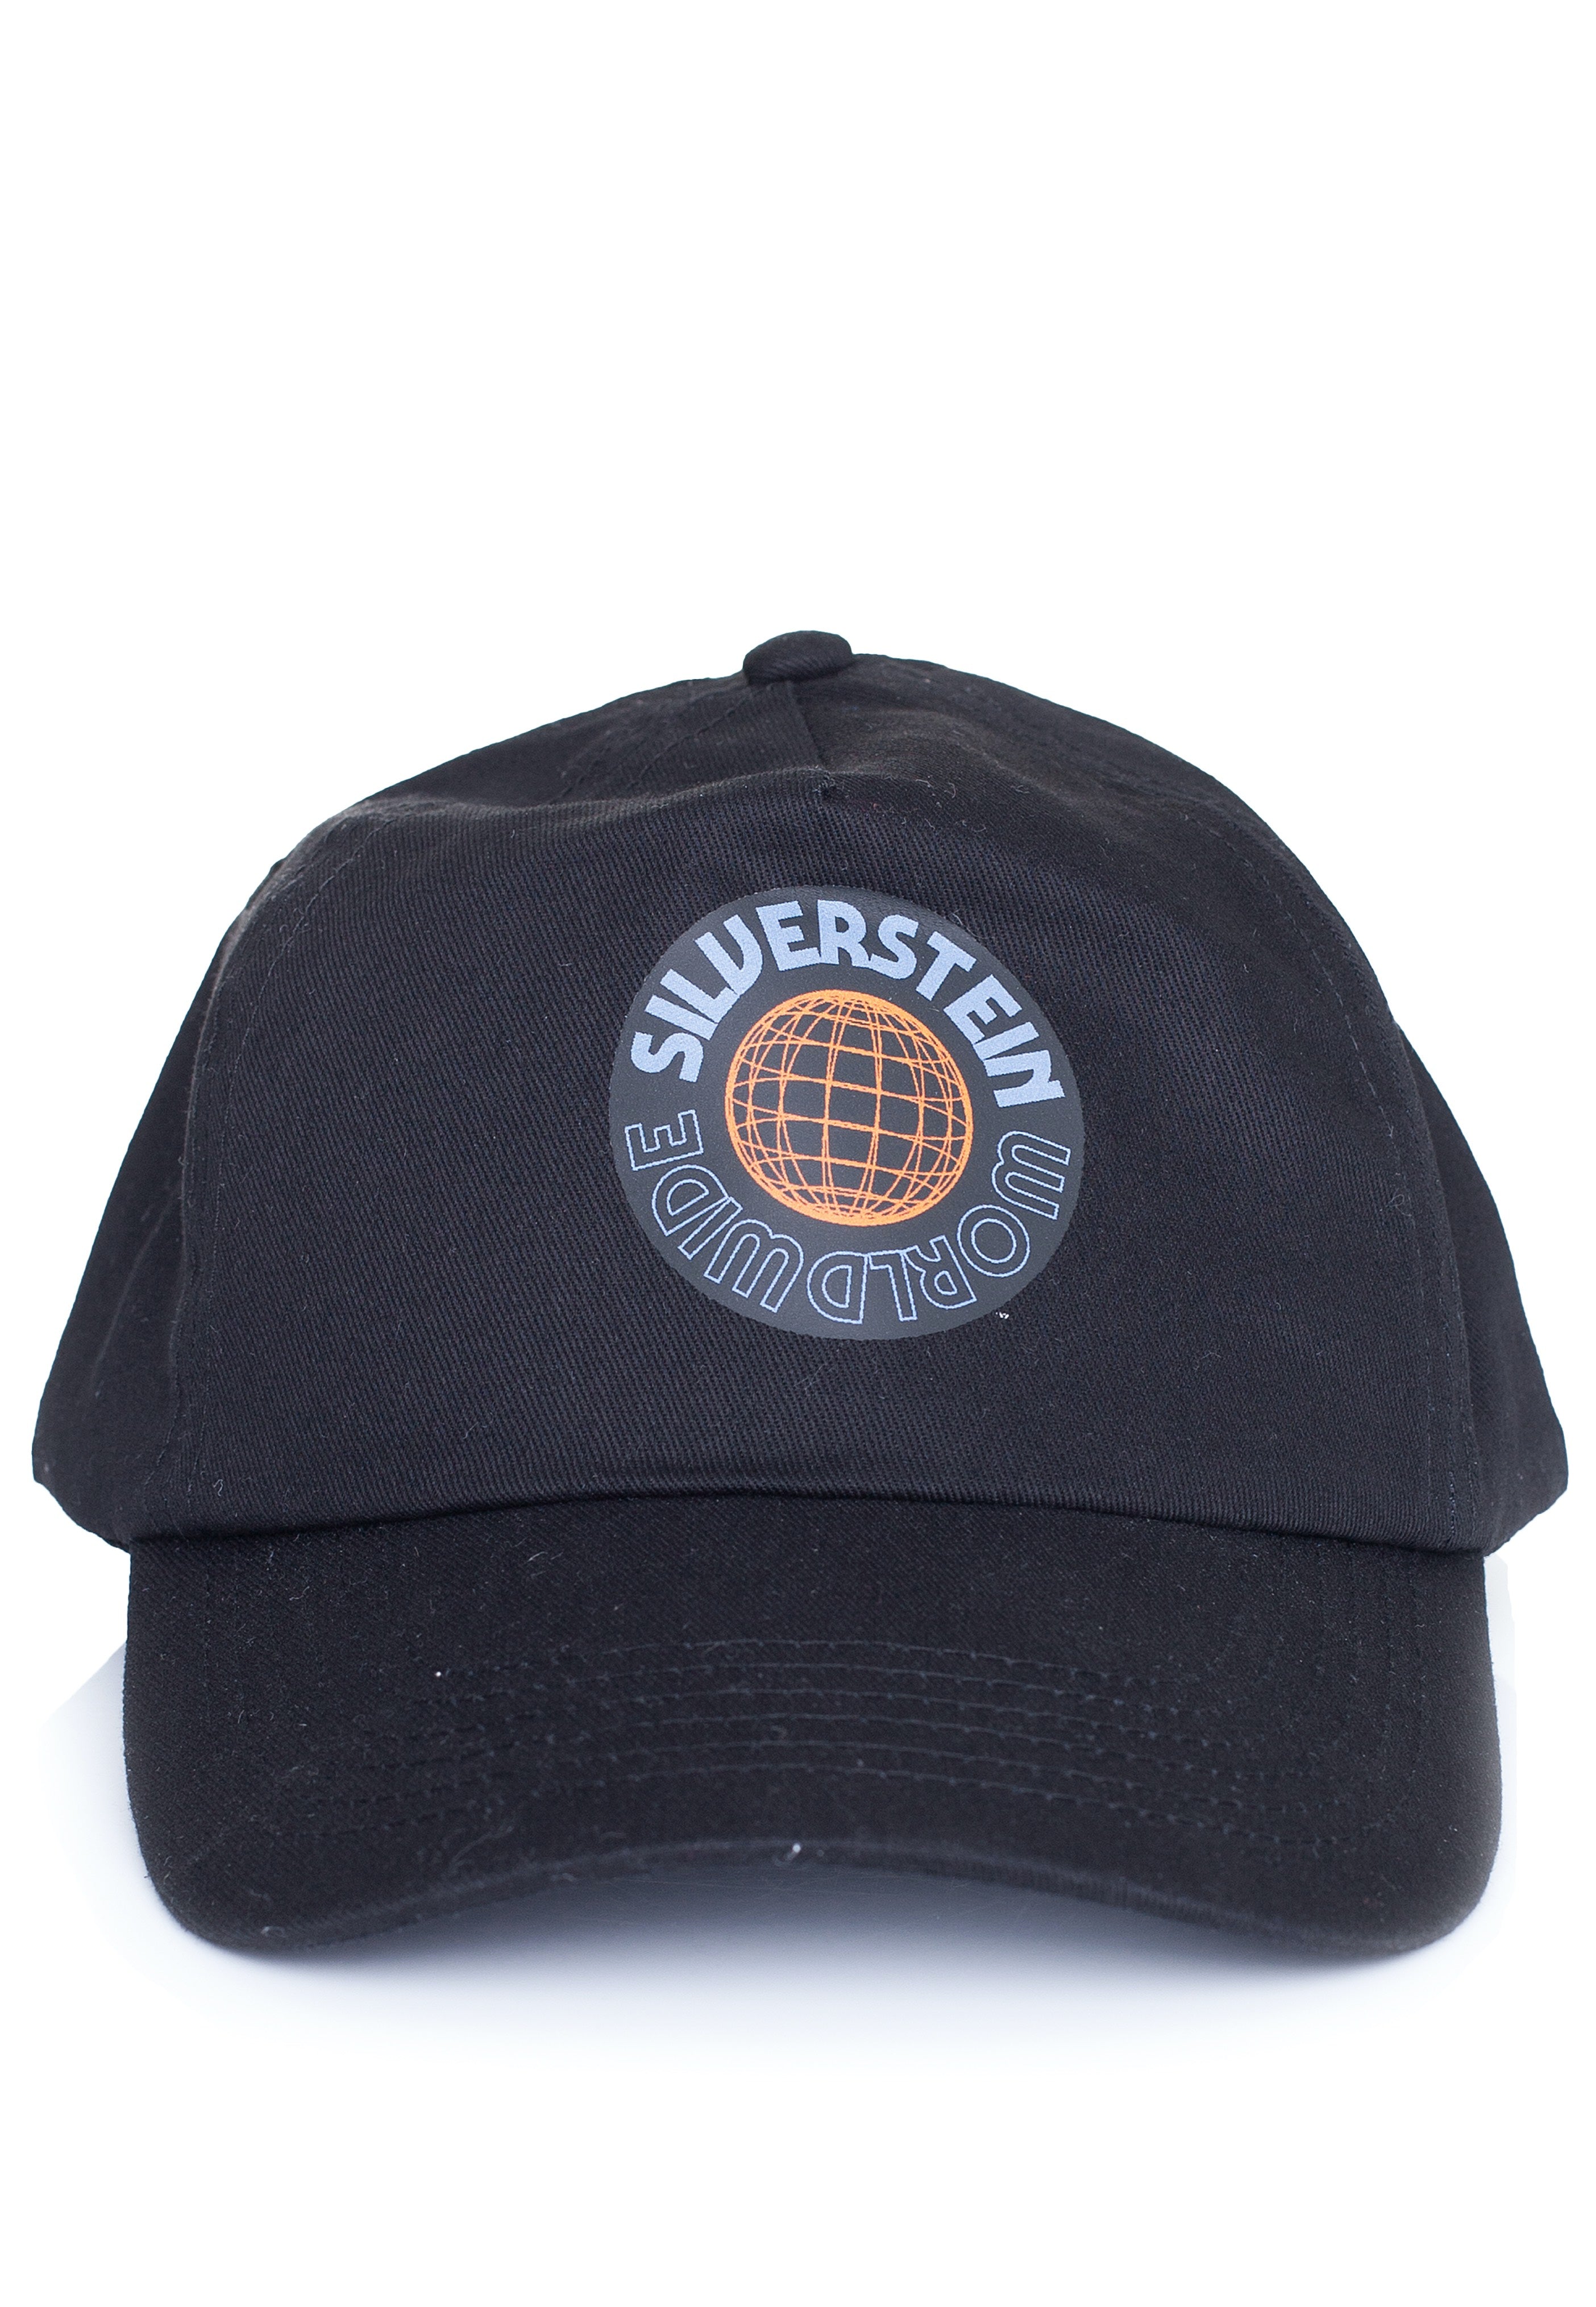 Silverstein - World Wide - Cap